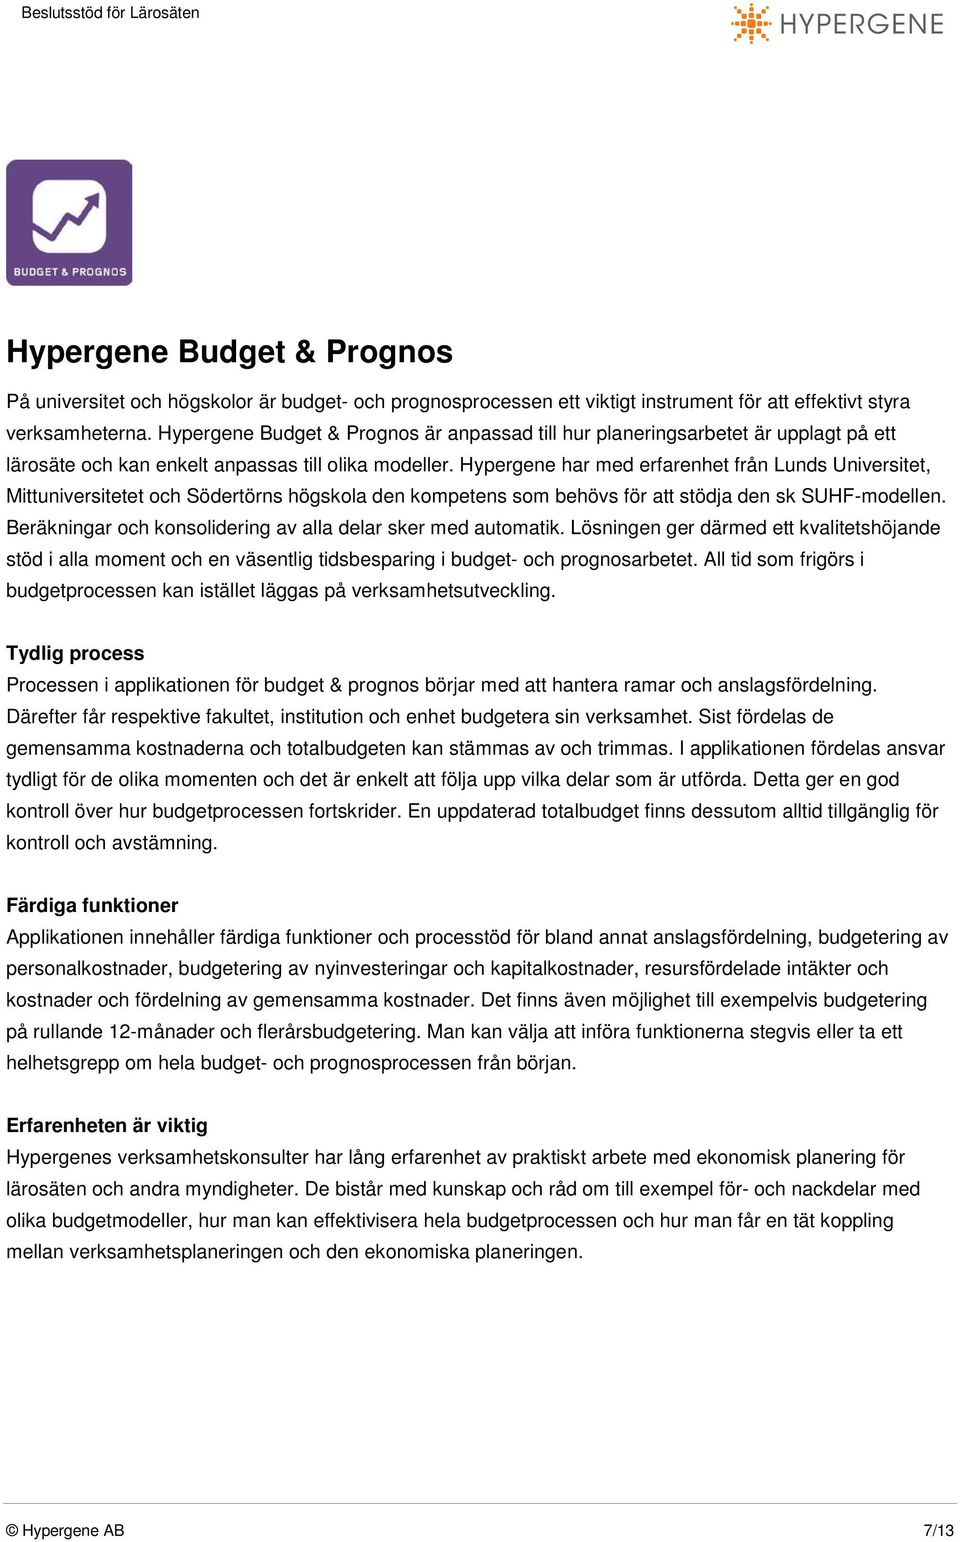 Hypergene har med erfarenhet från Lunds Universitet, Mittuniversitetet och Södertörns högskola den kompetens som behövs för att stödja den sk SUHF-modellen.